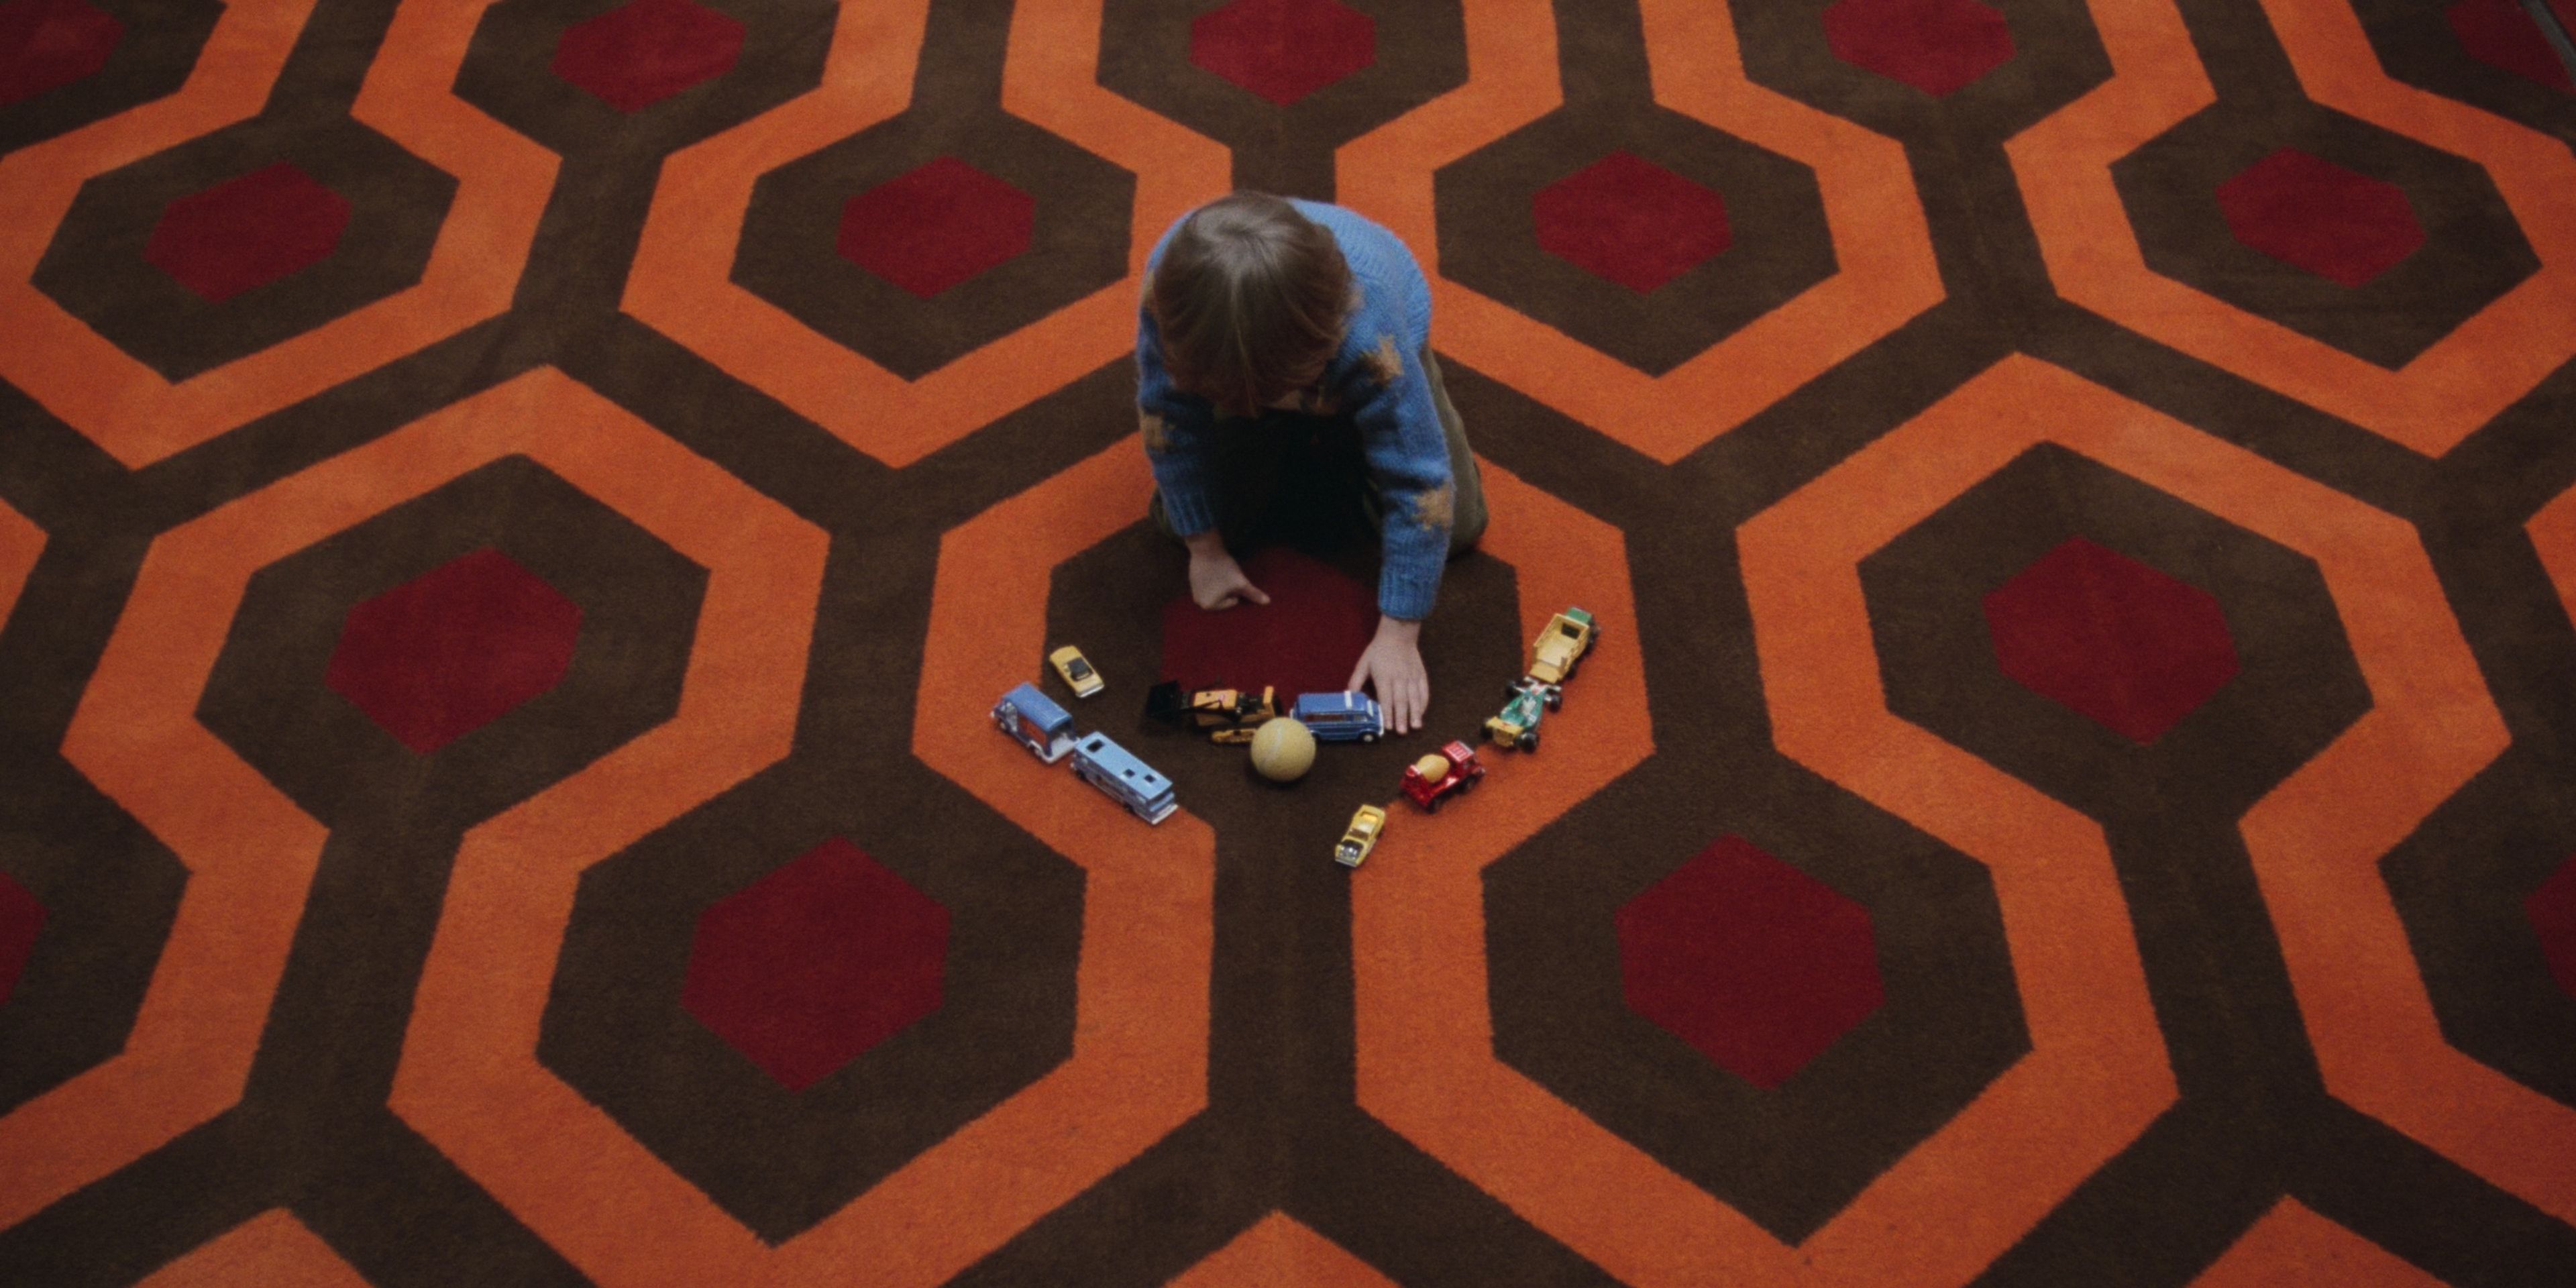 Danny jugando con sus juguetes en la alfombra del Hotel Overlook en El Resplandor